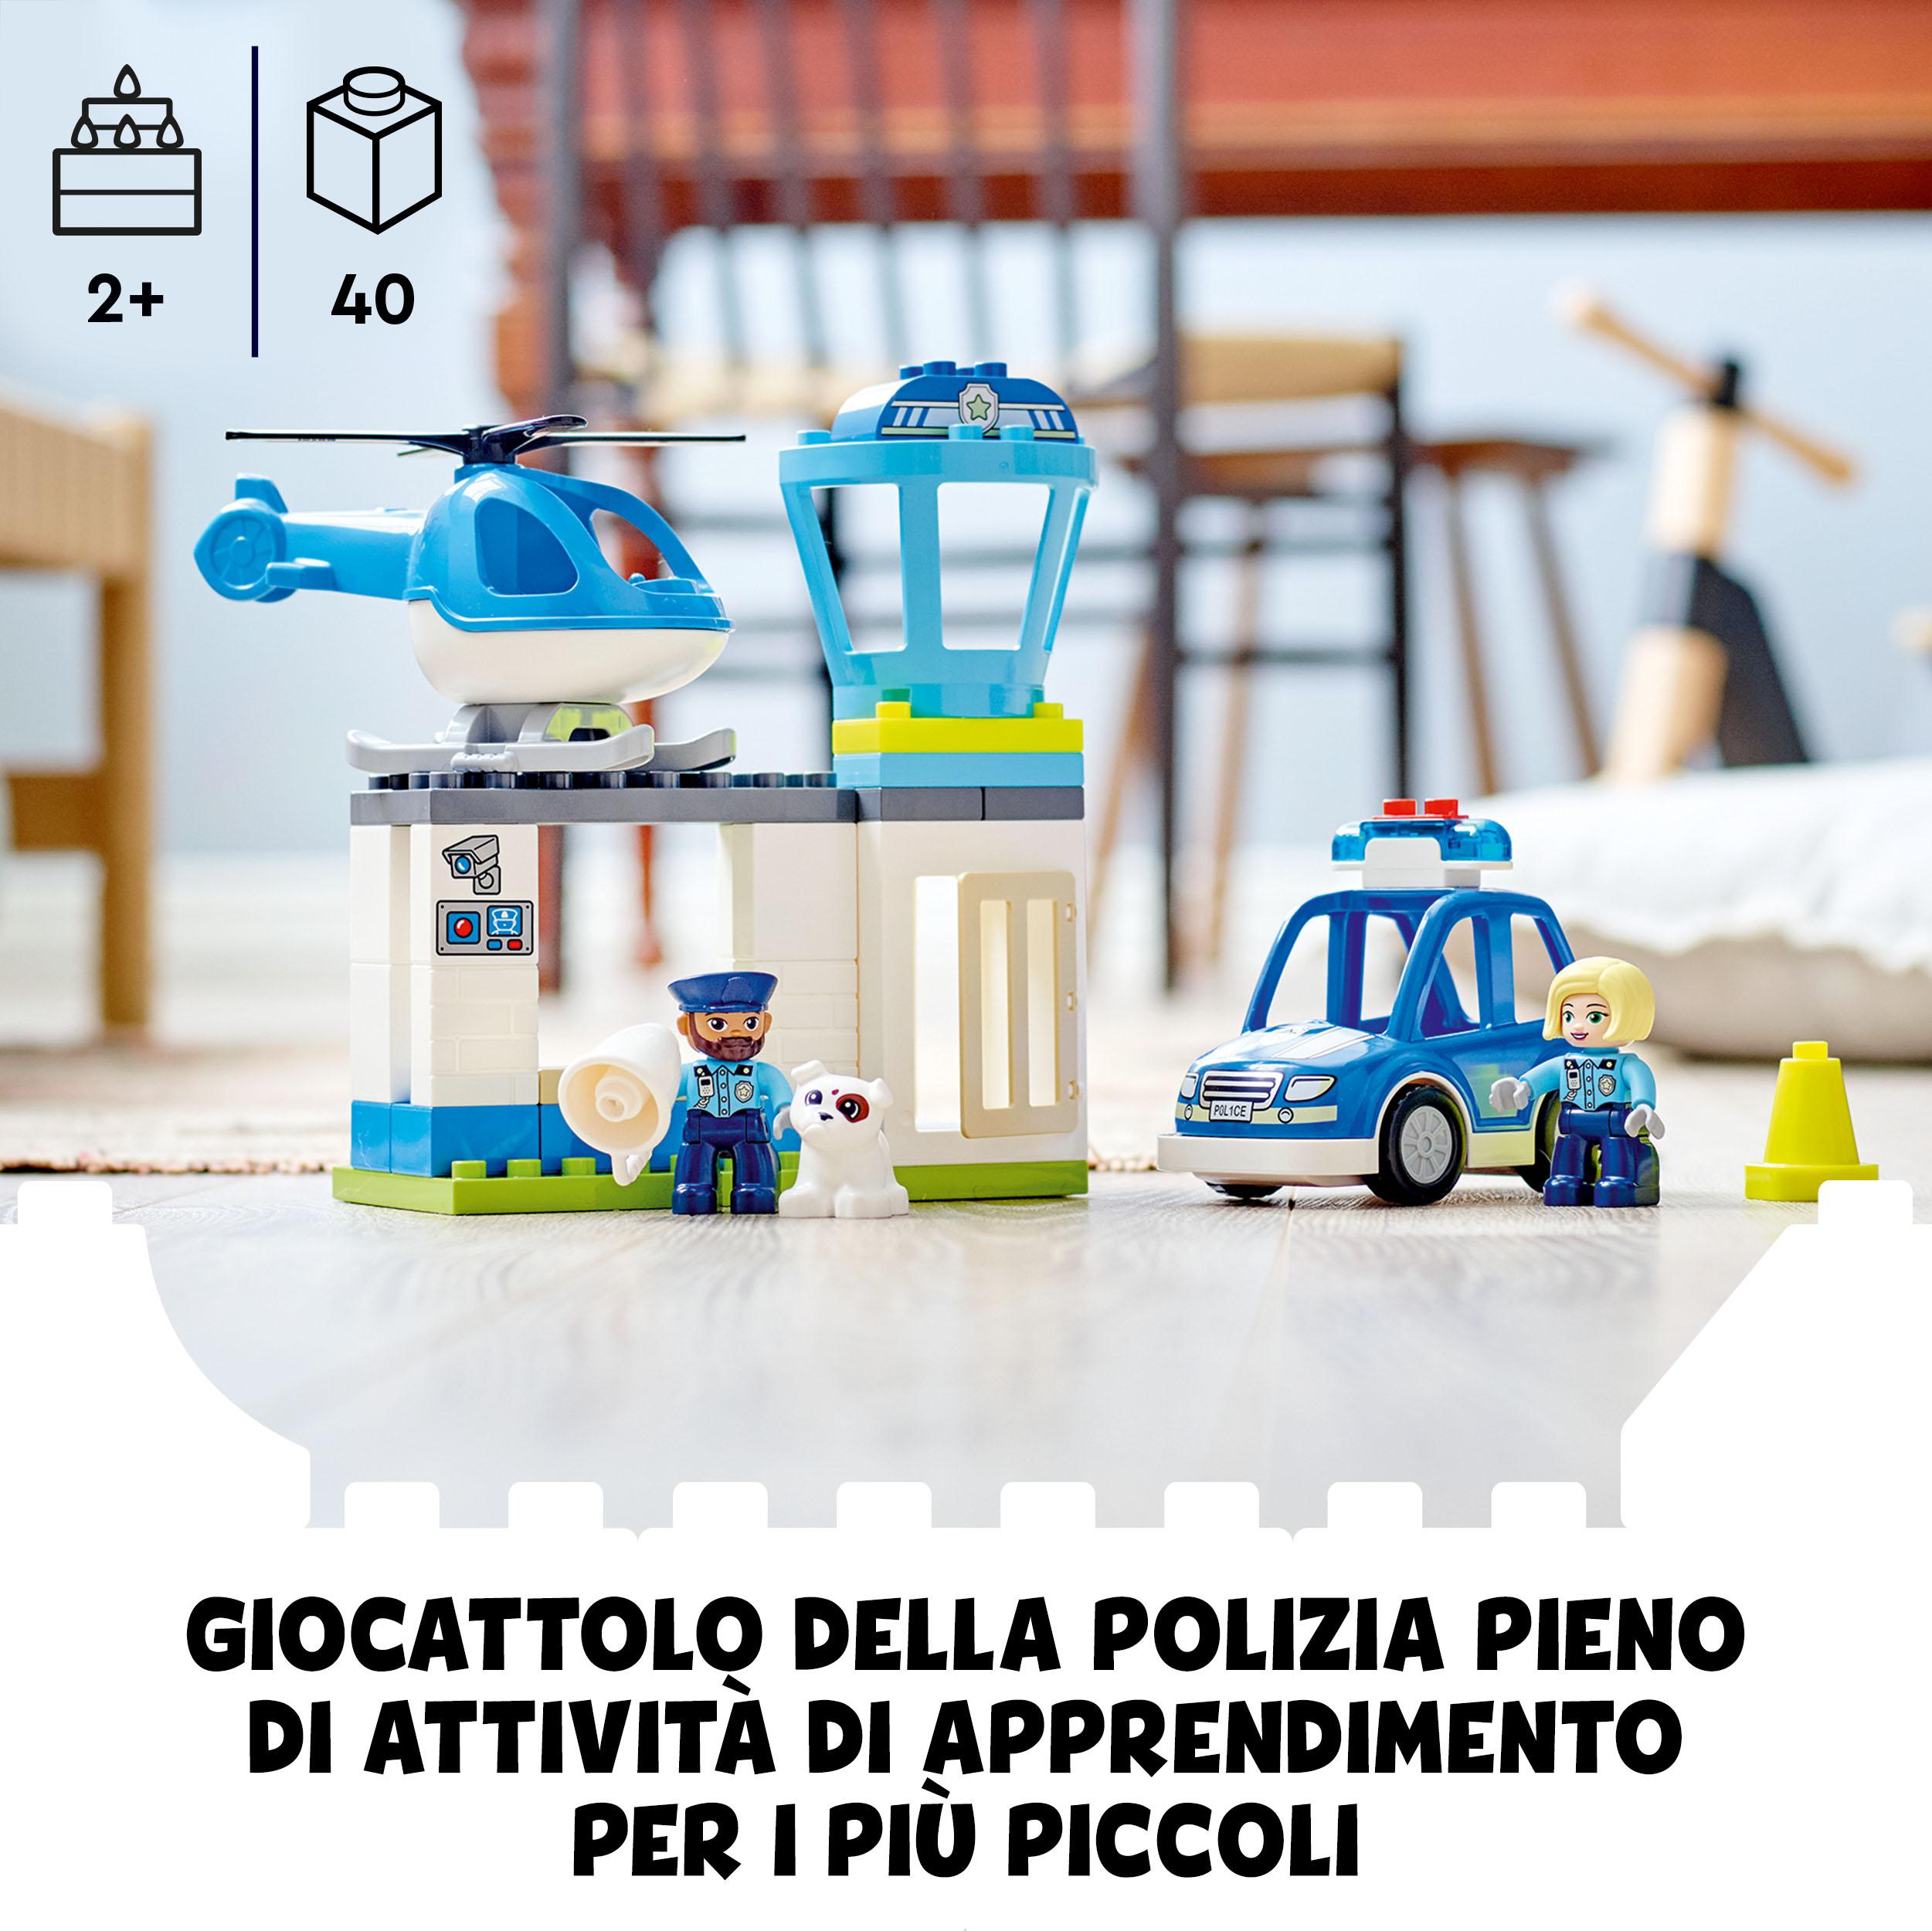 Lego duplo 10959 stazione di polizia ed elicottero, set per bambini di 2+ anni, macchina giocattolo con luci e sirene - LEGO DUPLO, Lego